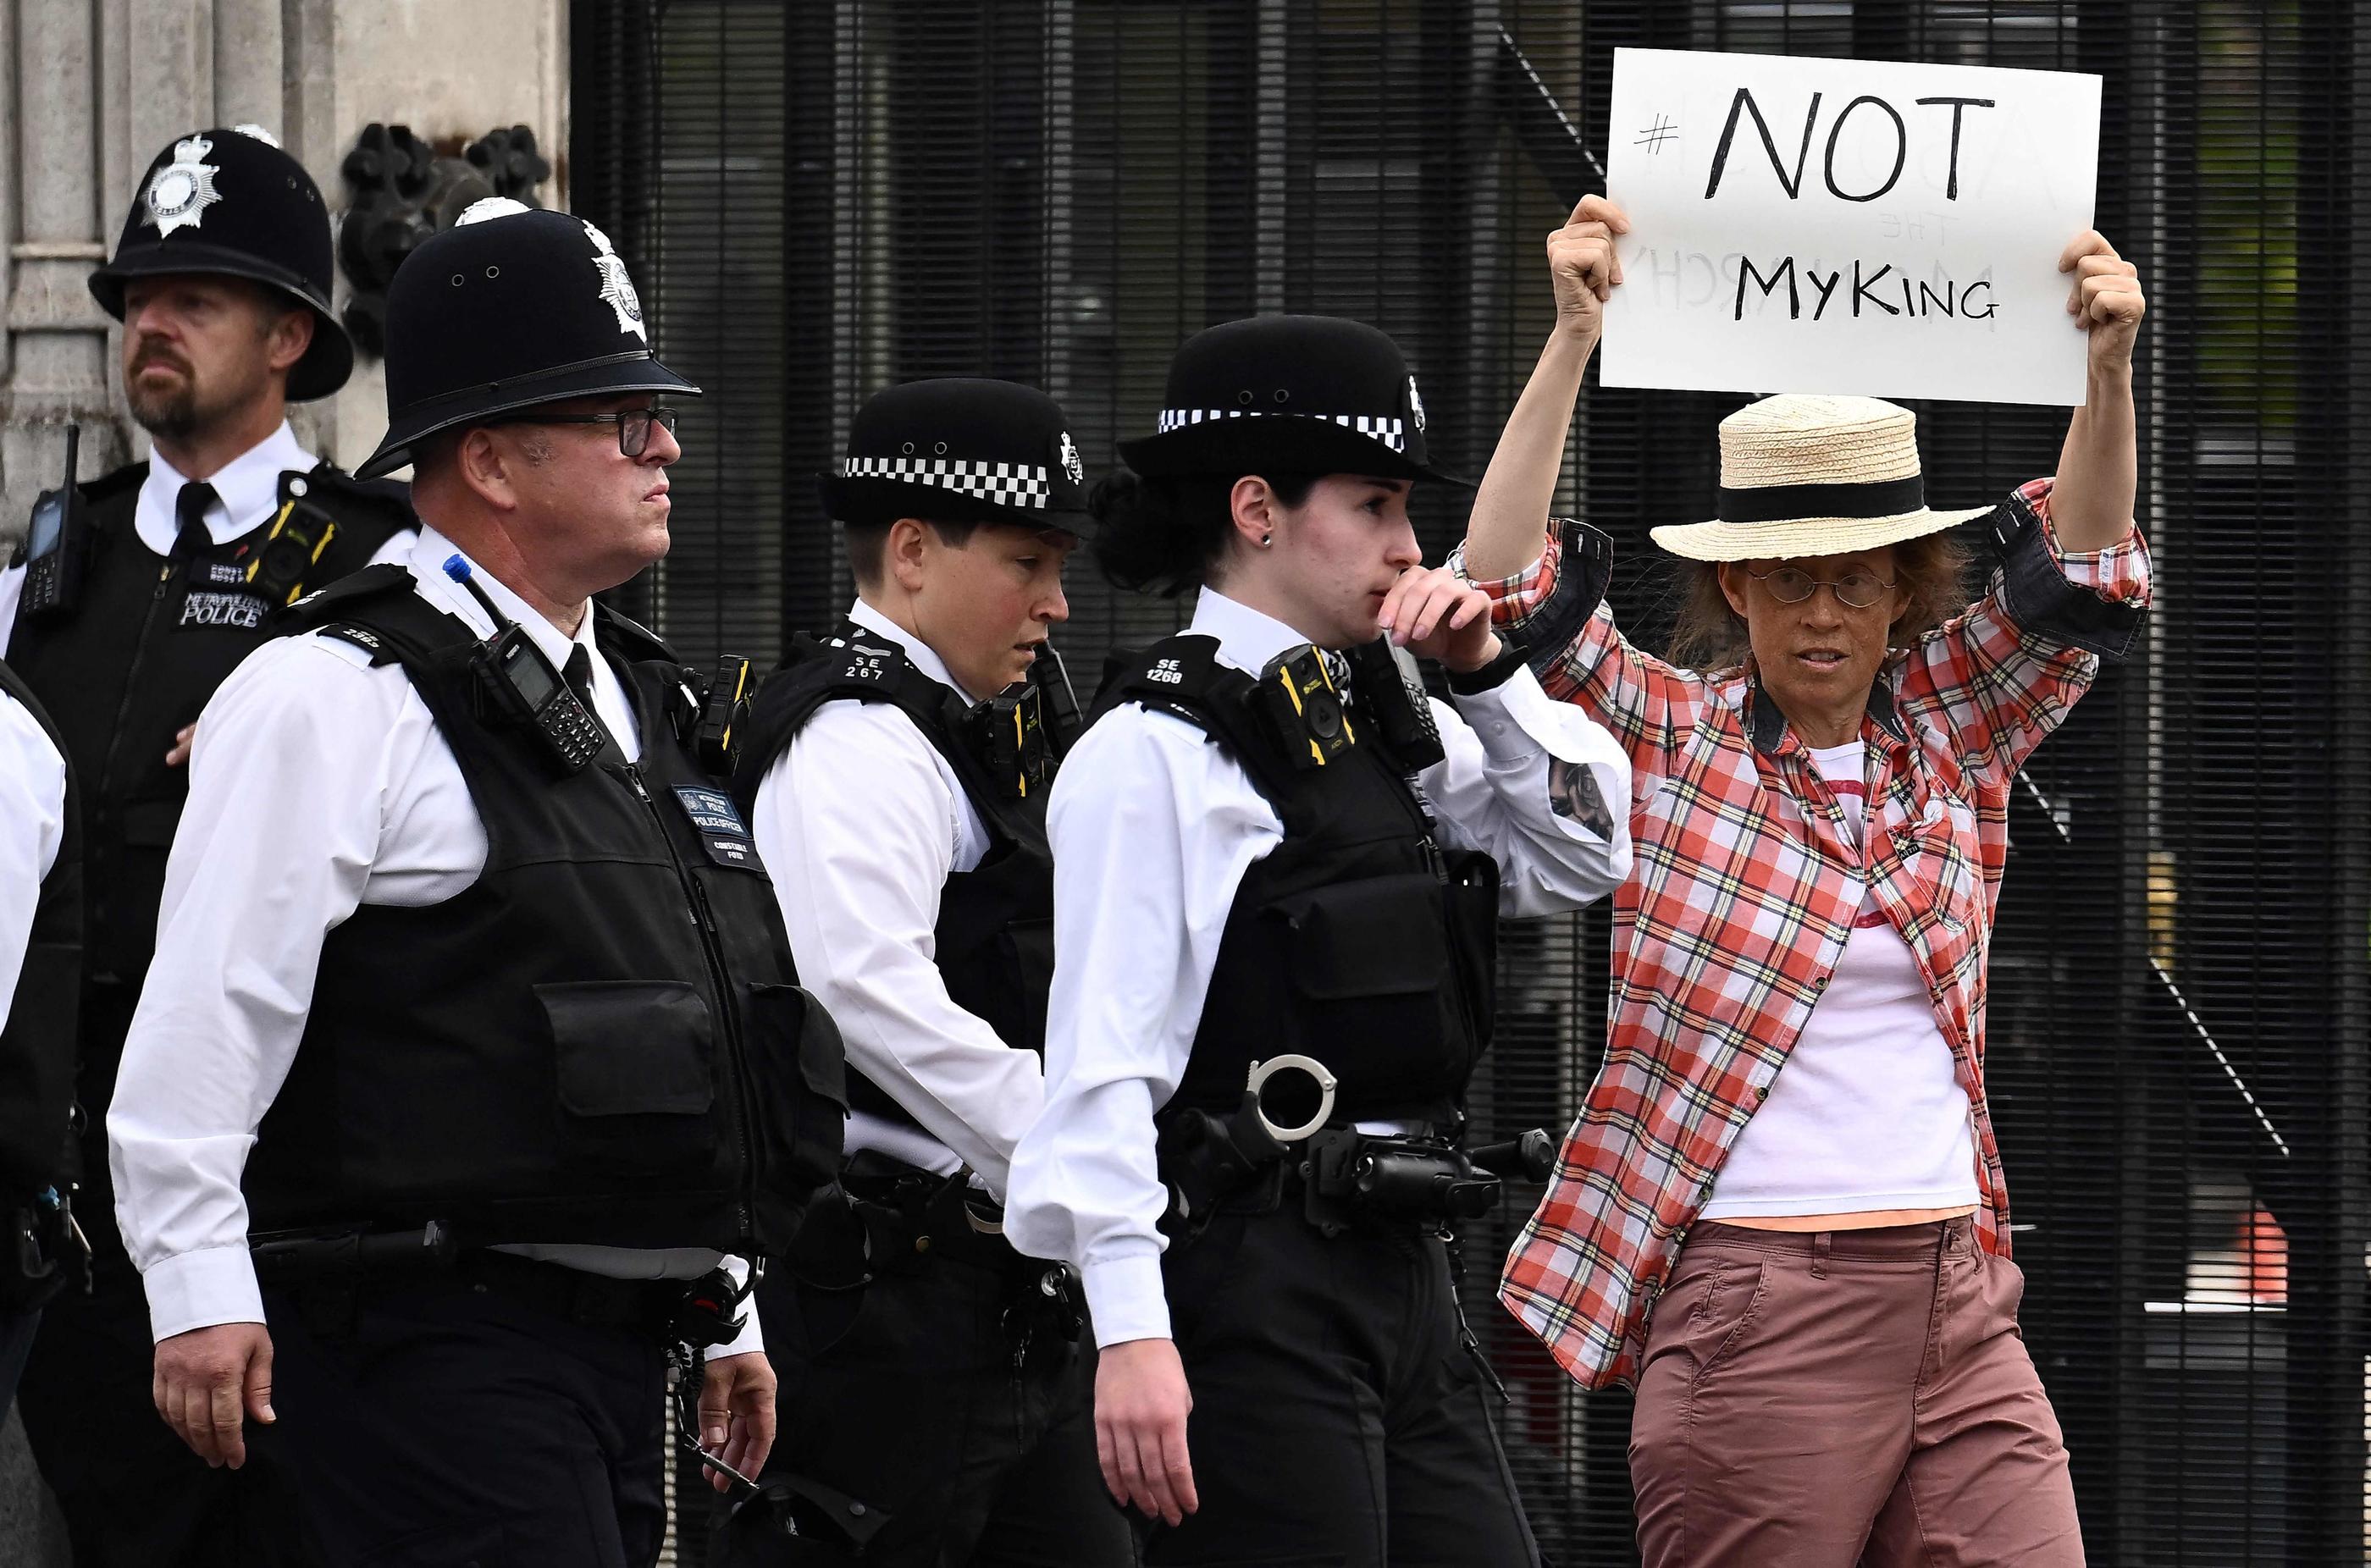 Une manifestante, brandissant une pancarte portant l'inscription "Pas mon roi", a été arrêtée devant le Parlement britannique ce lundi. AFP/Marco Bertorello